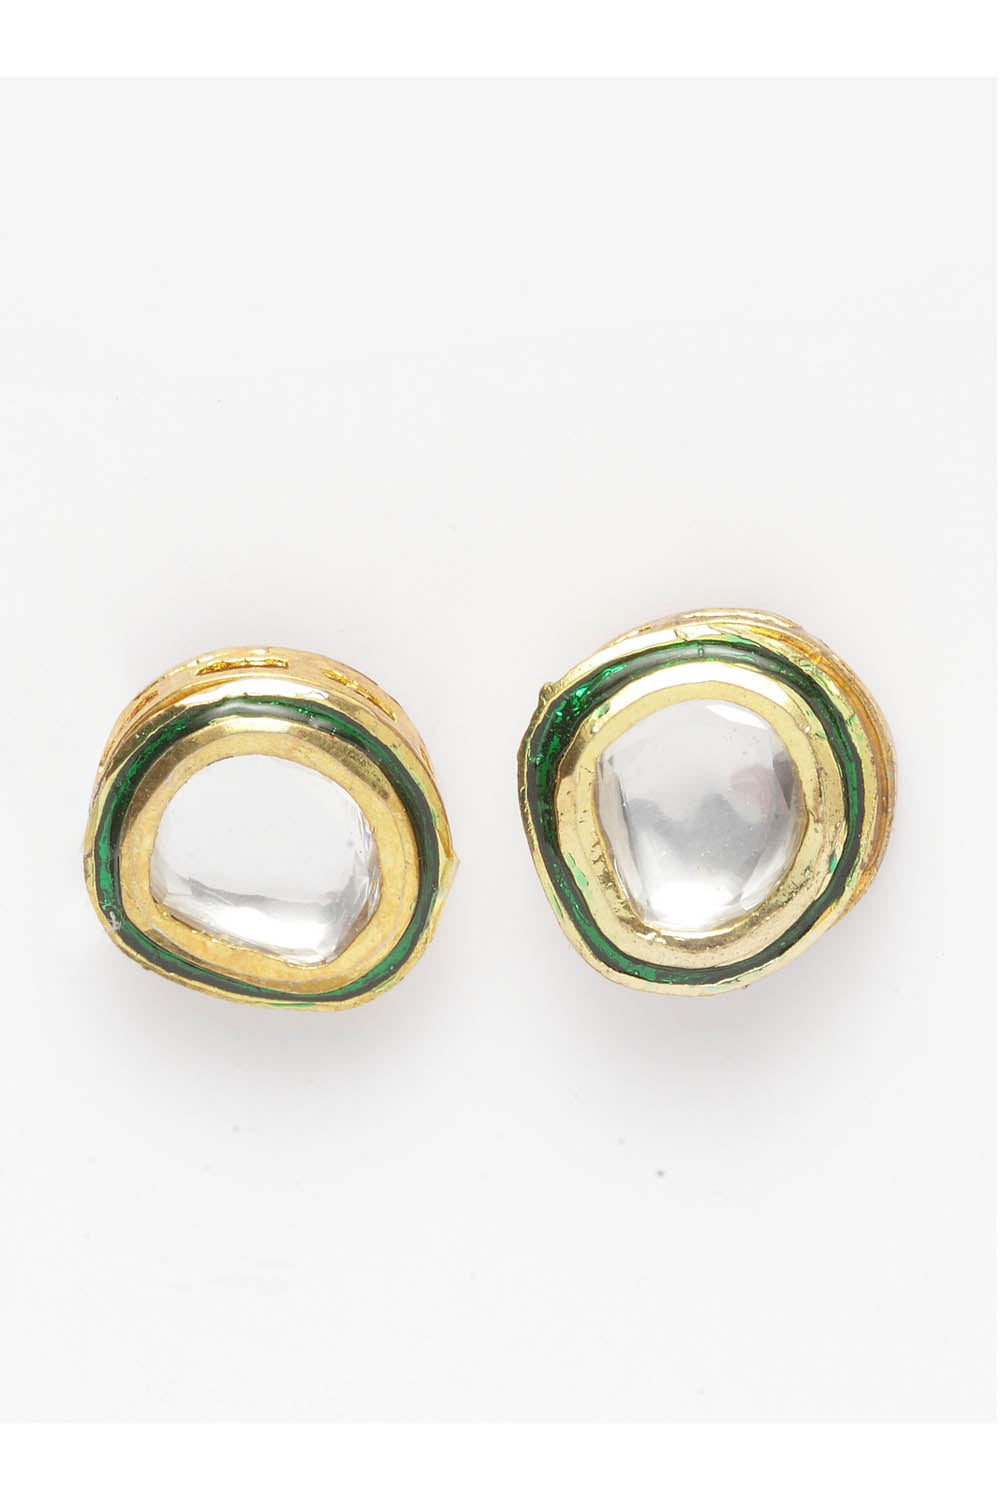 Women's Sterling Silver Studs Earrings in Green